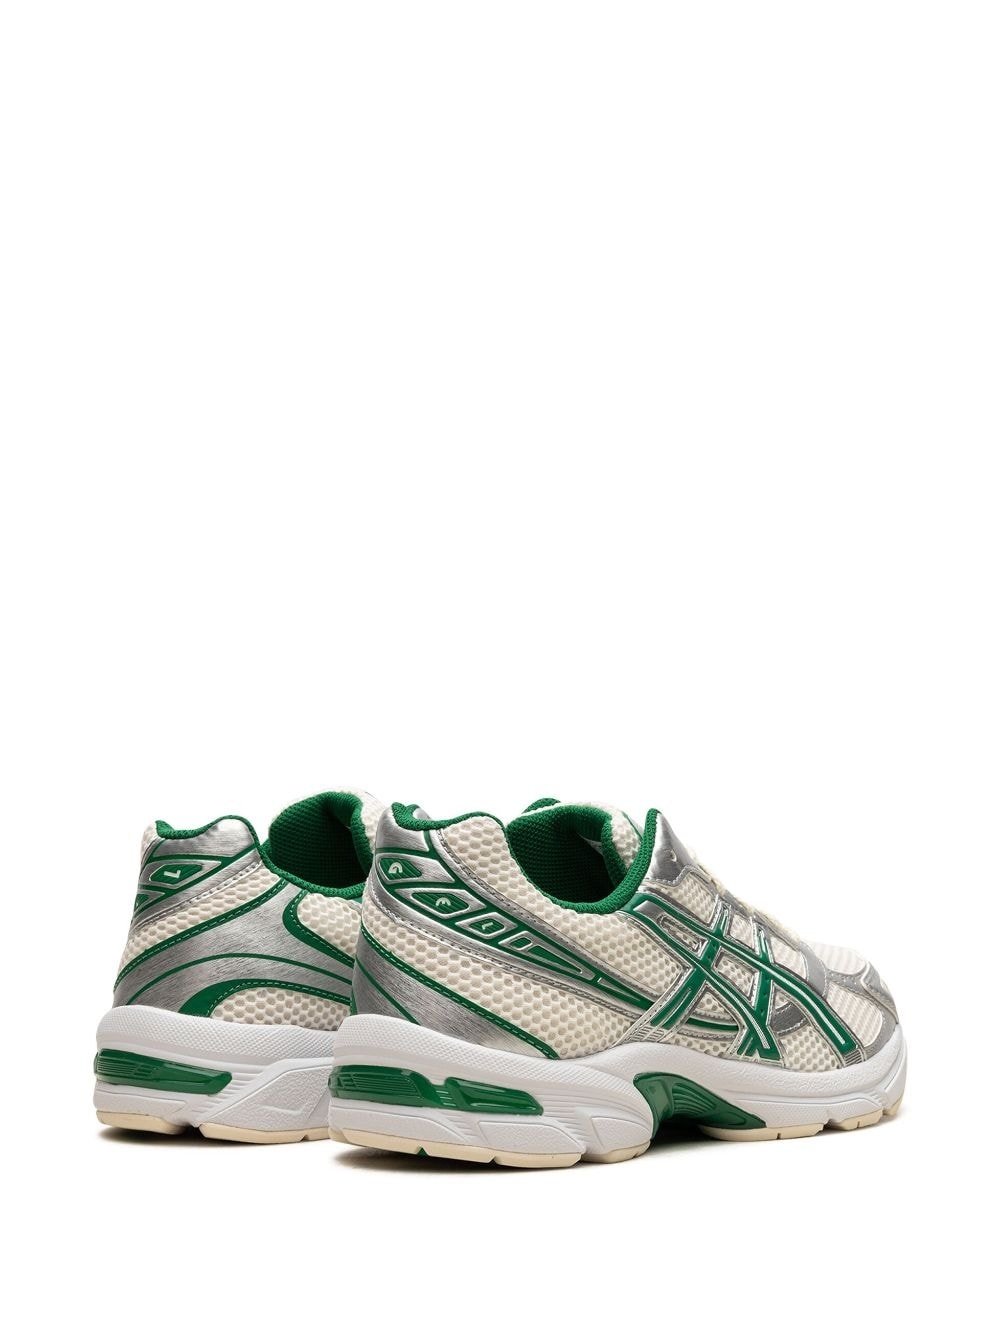 GEL-1130 "Kale Green" sneakers - 3